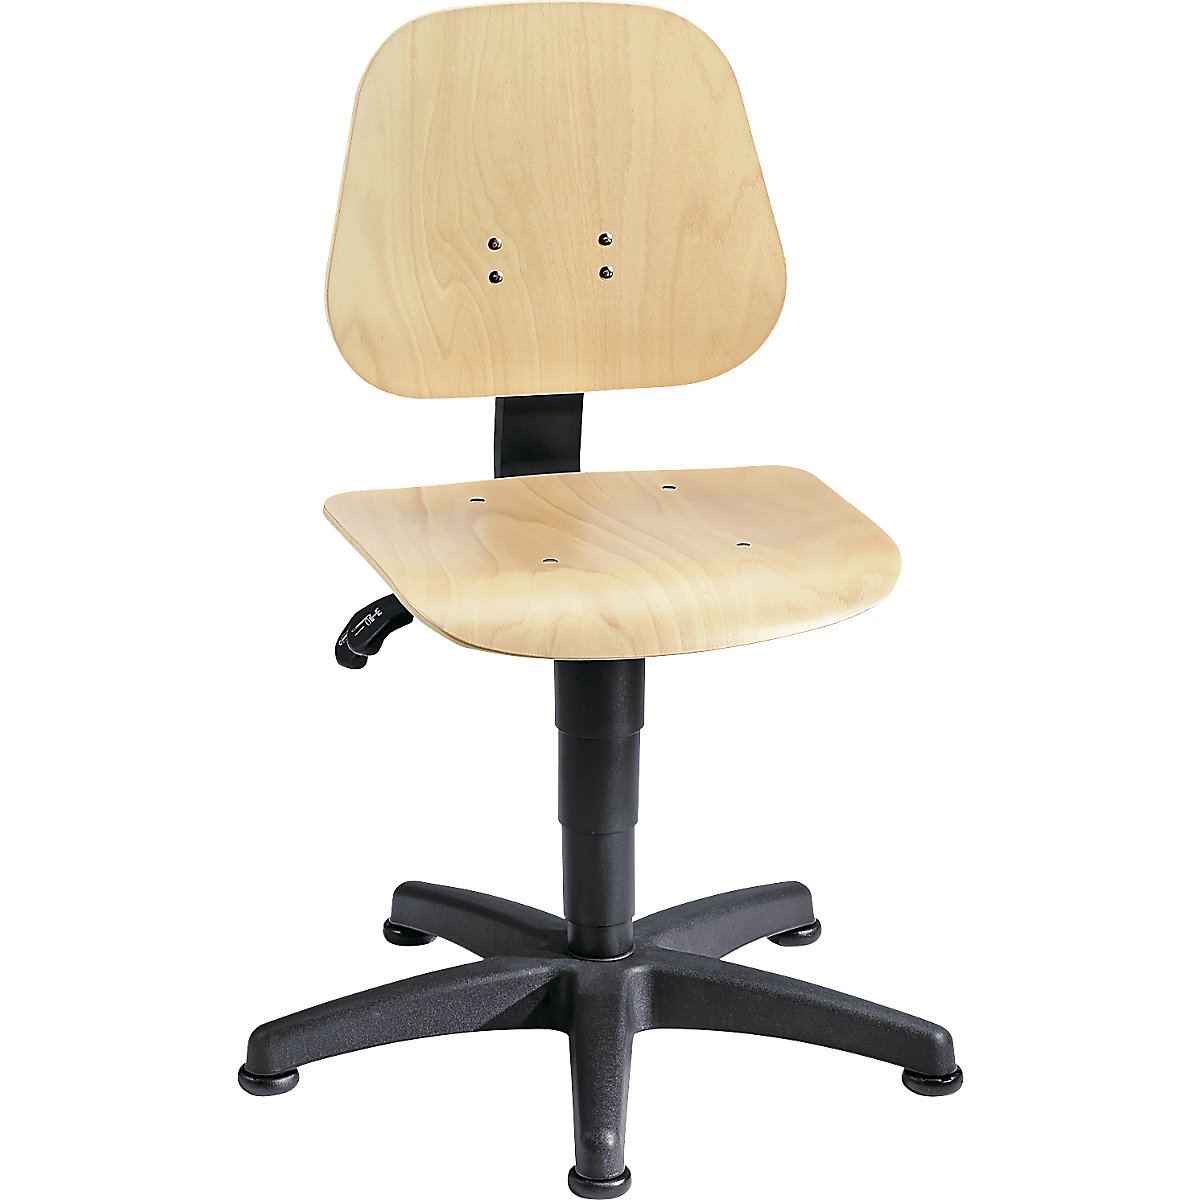 Pracovní otočná židle – bimos, s přestavováním výšky plynovým pístem, bukové vrstvené dřevo, s podlahovými patkami, od 3 ks-11